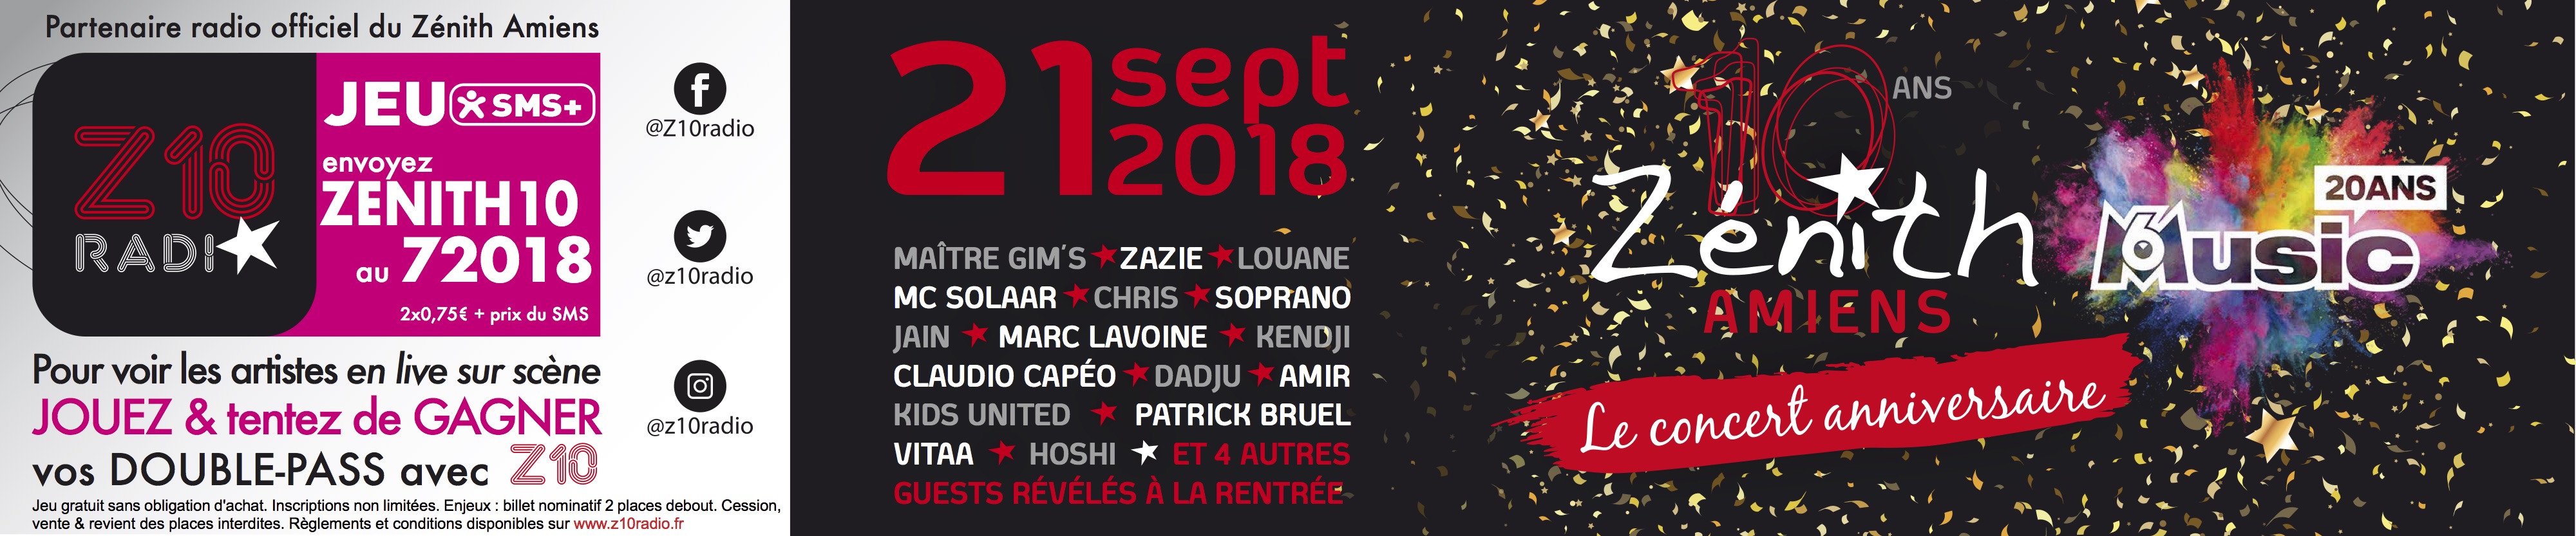 Le Concert Anniversaire 10 Ans Zenith Amiens Ans M6 Music Zenith Amiens Metropole Site Officiel